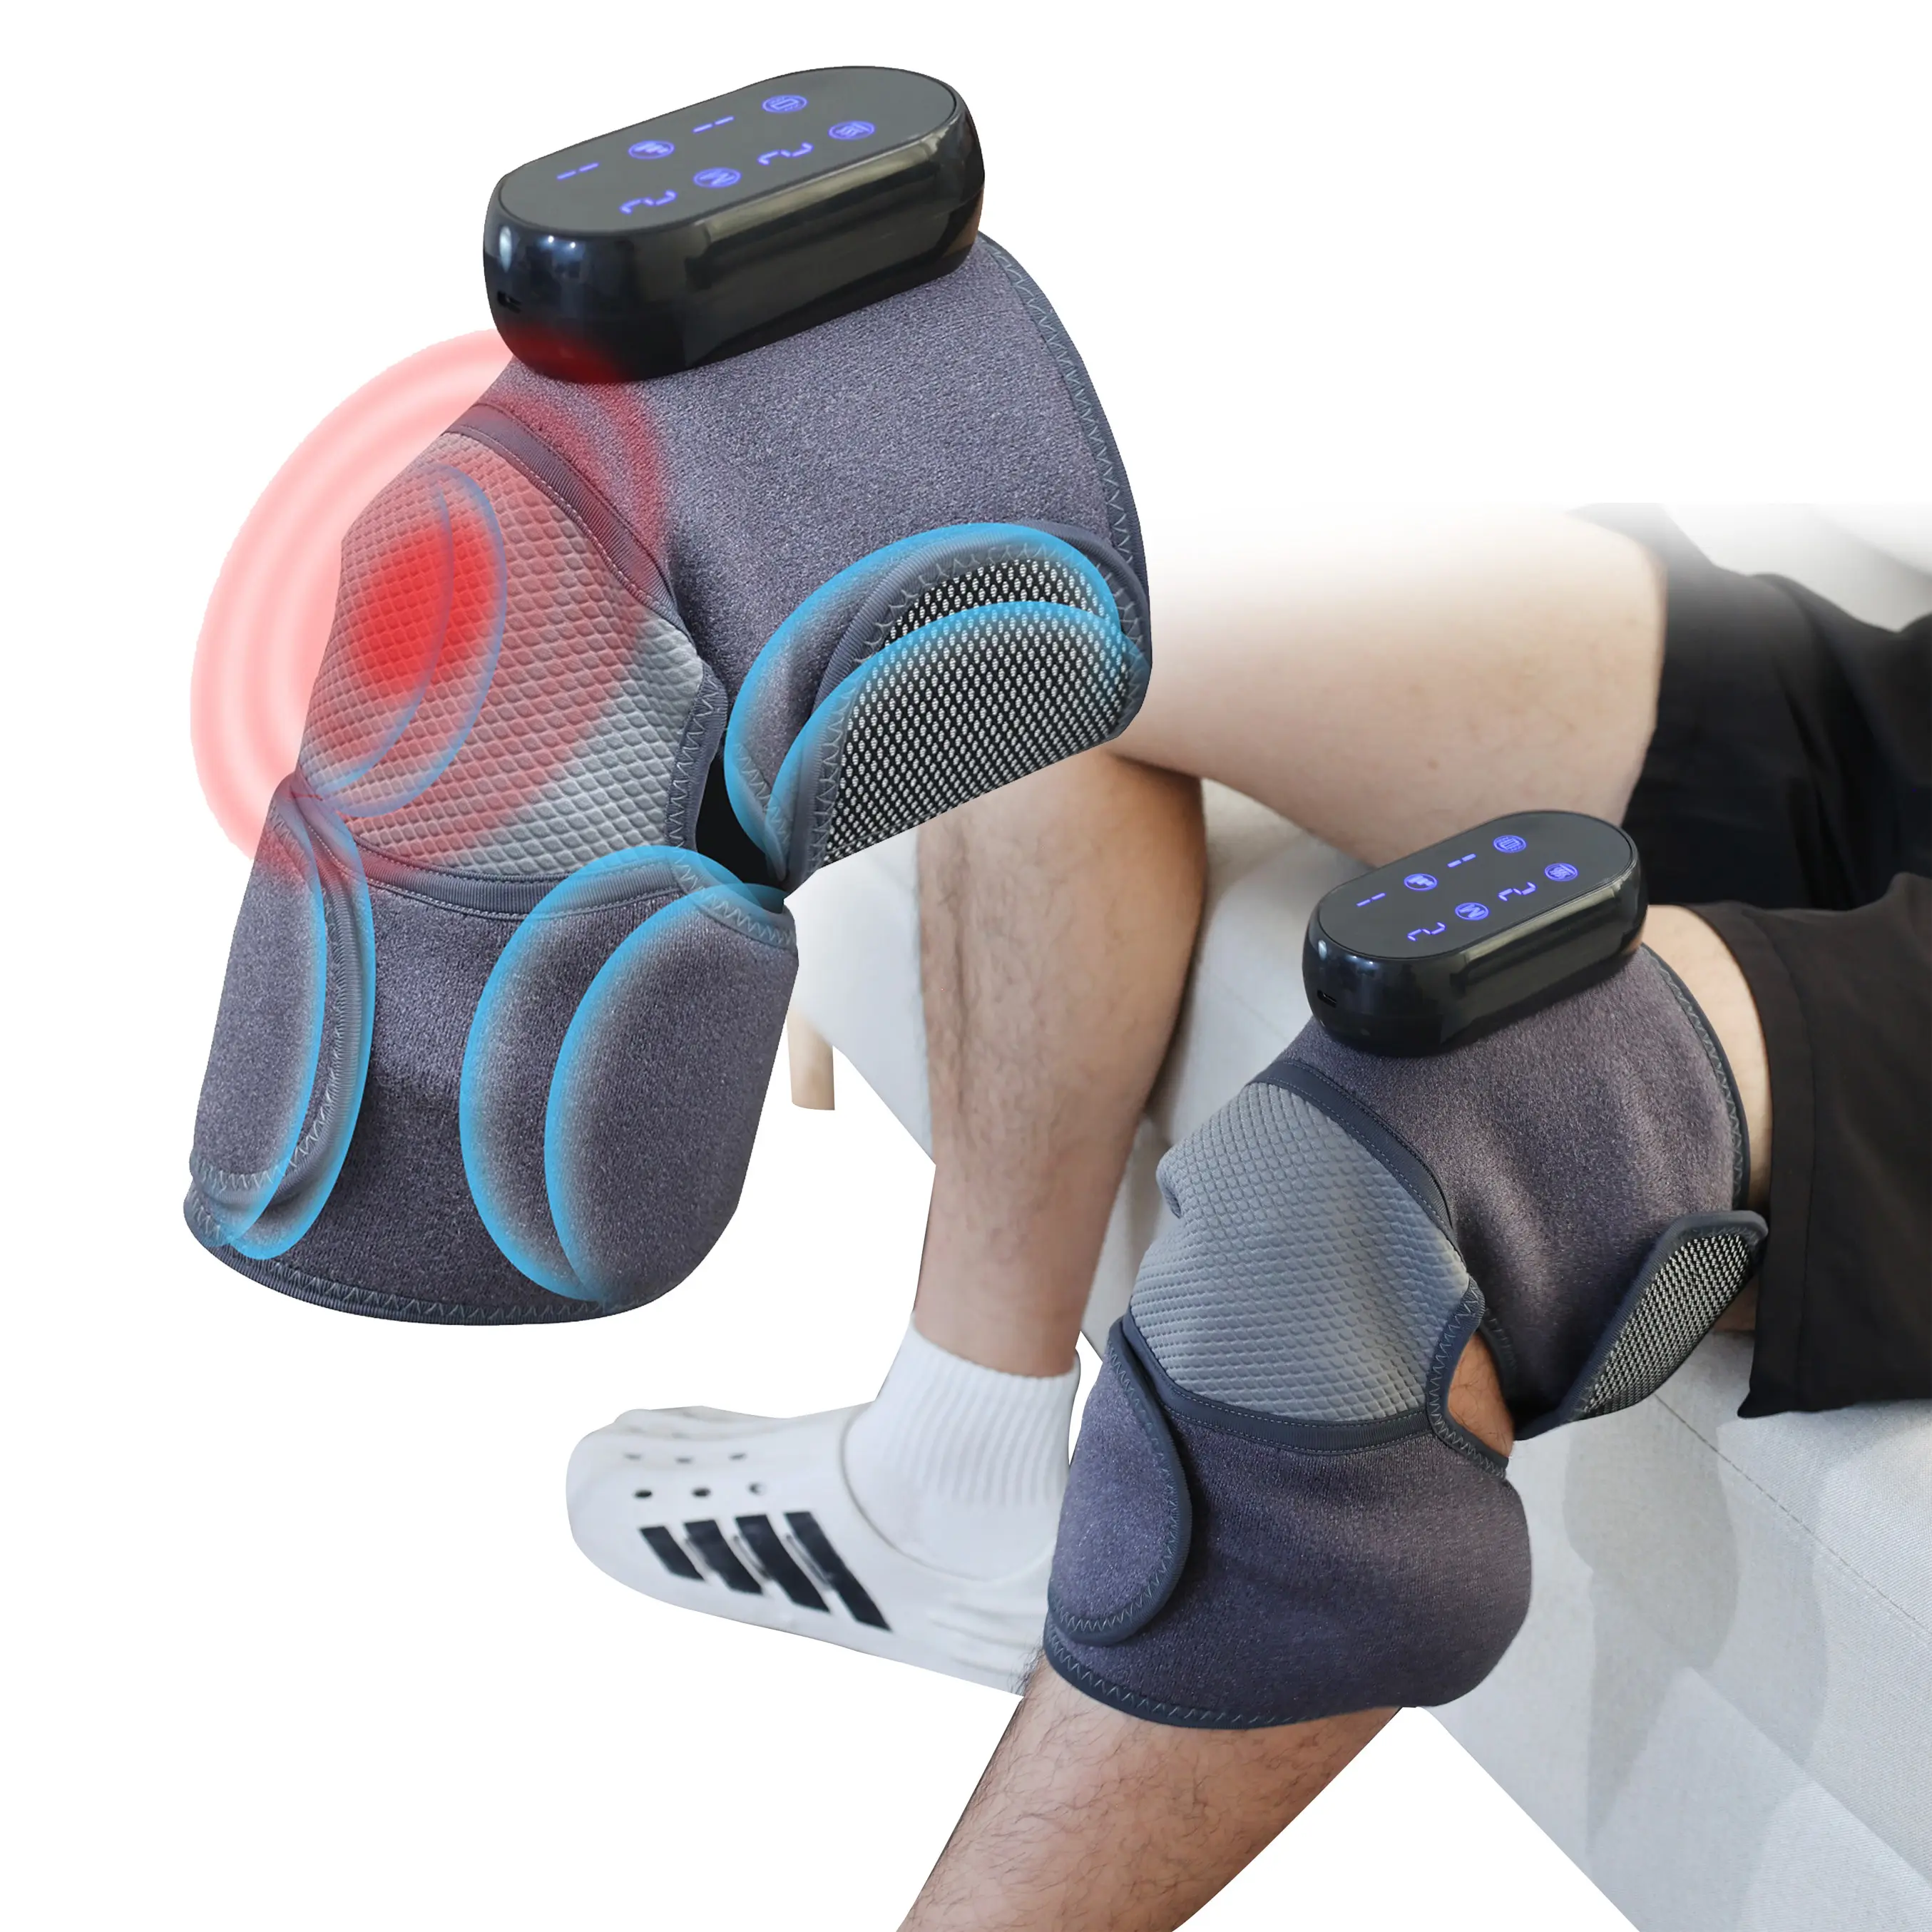 Ricaricabile odm smart hot compress terapia di riscaldamento elettrico osteoartrite massaggiatore per gambe e ginocchia con compressione dell'aria di calore